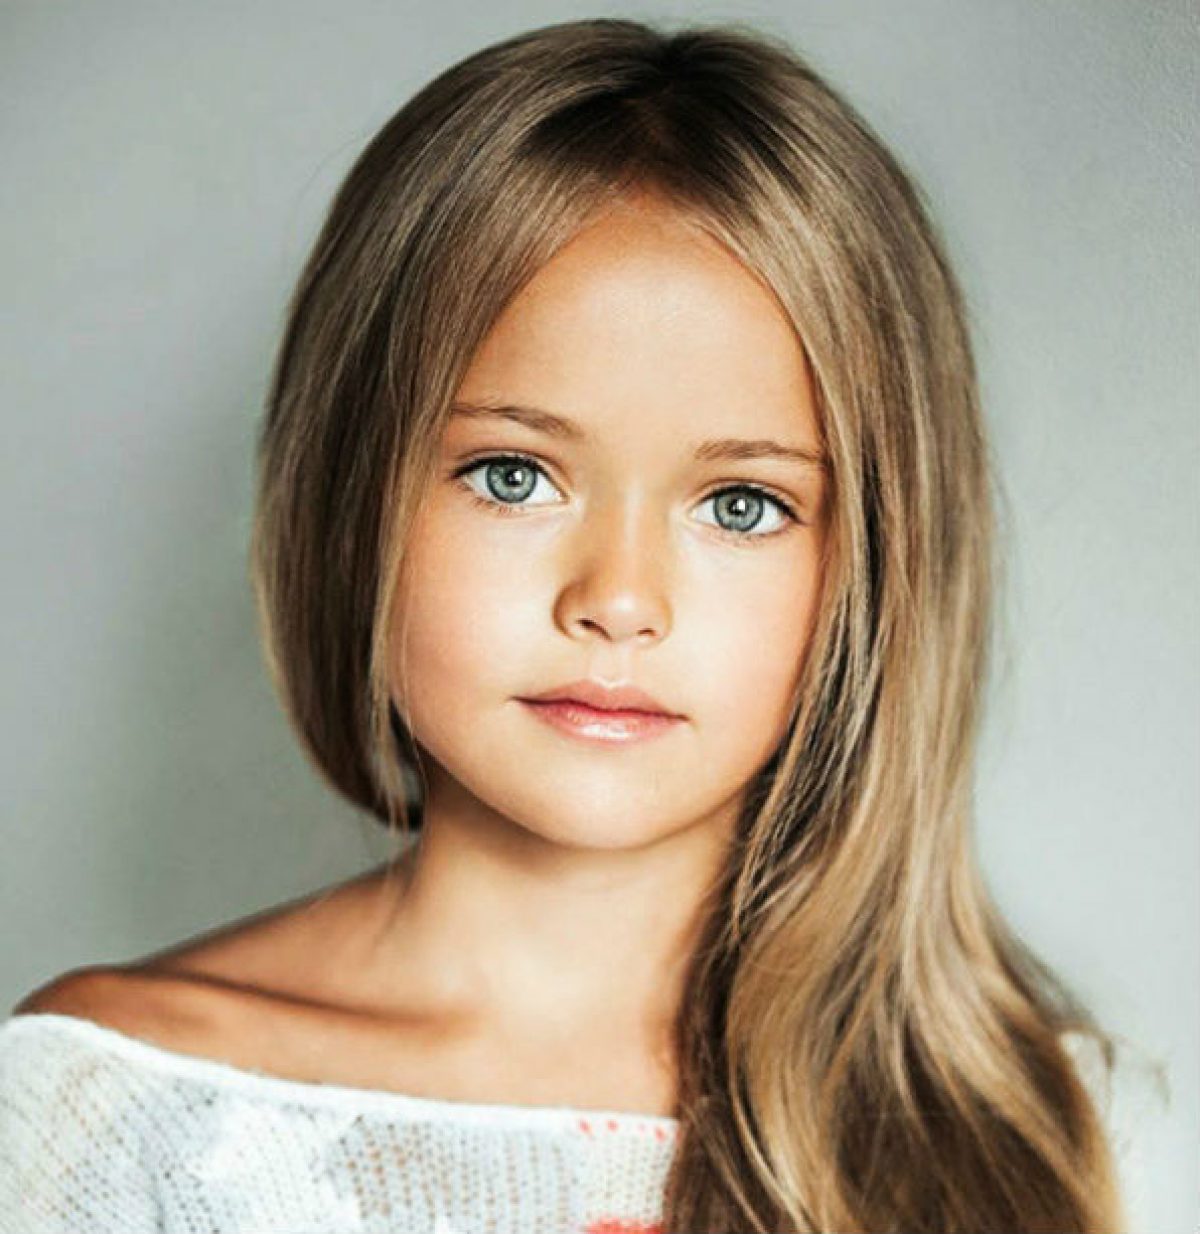 Menina de 8 anos é considerada a garotinha mais bonita do mundo - Correio  do Estado